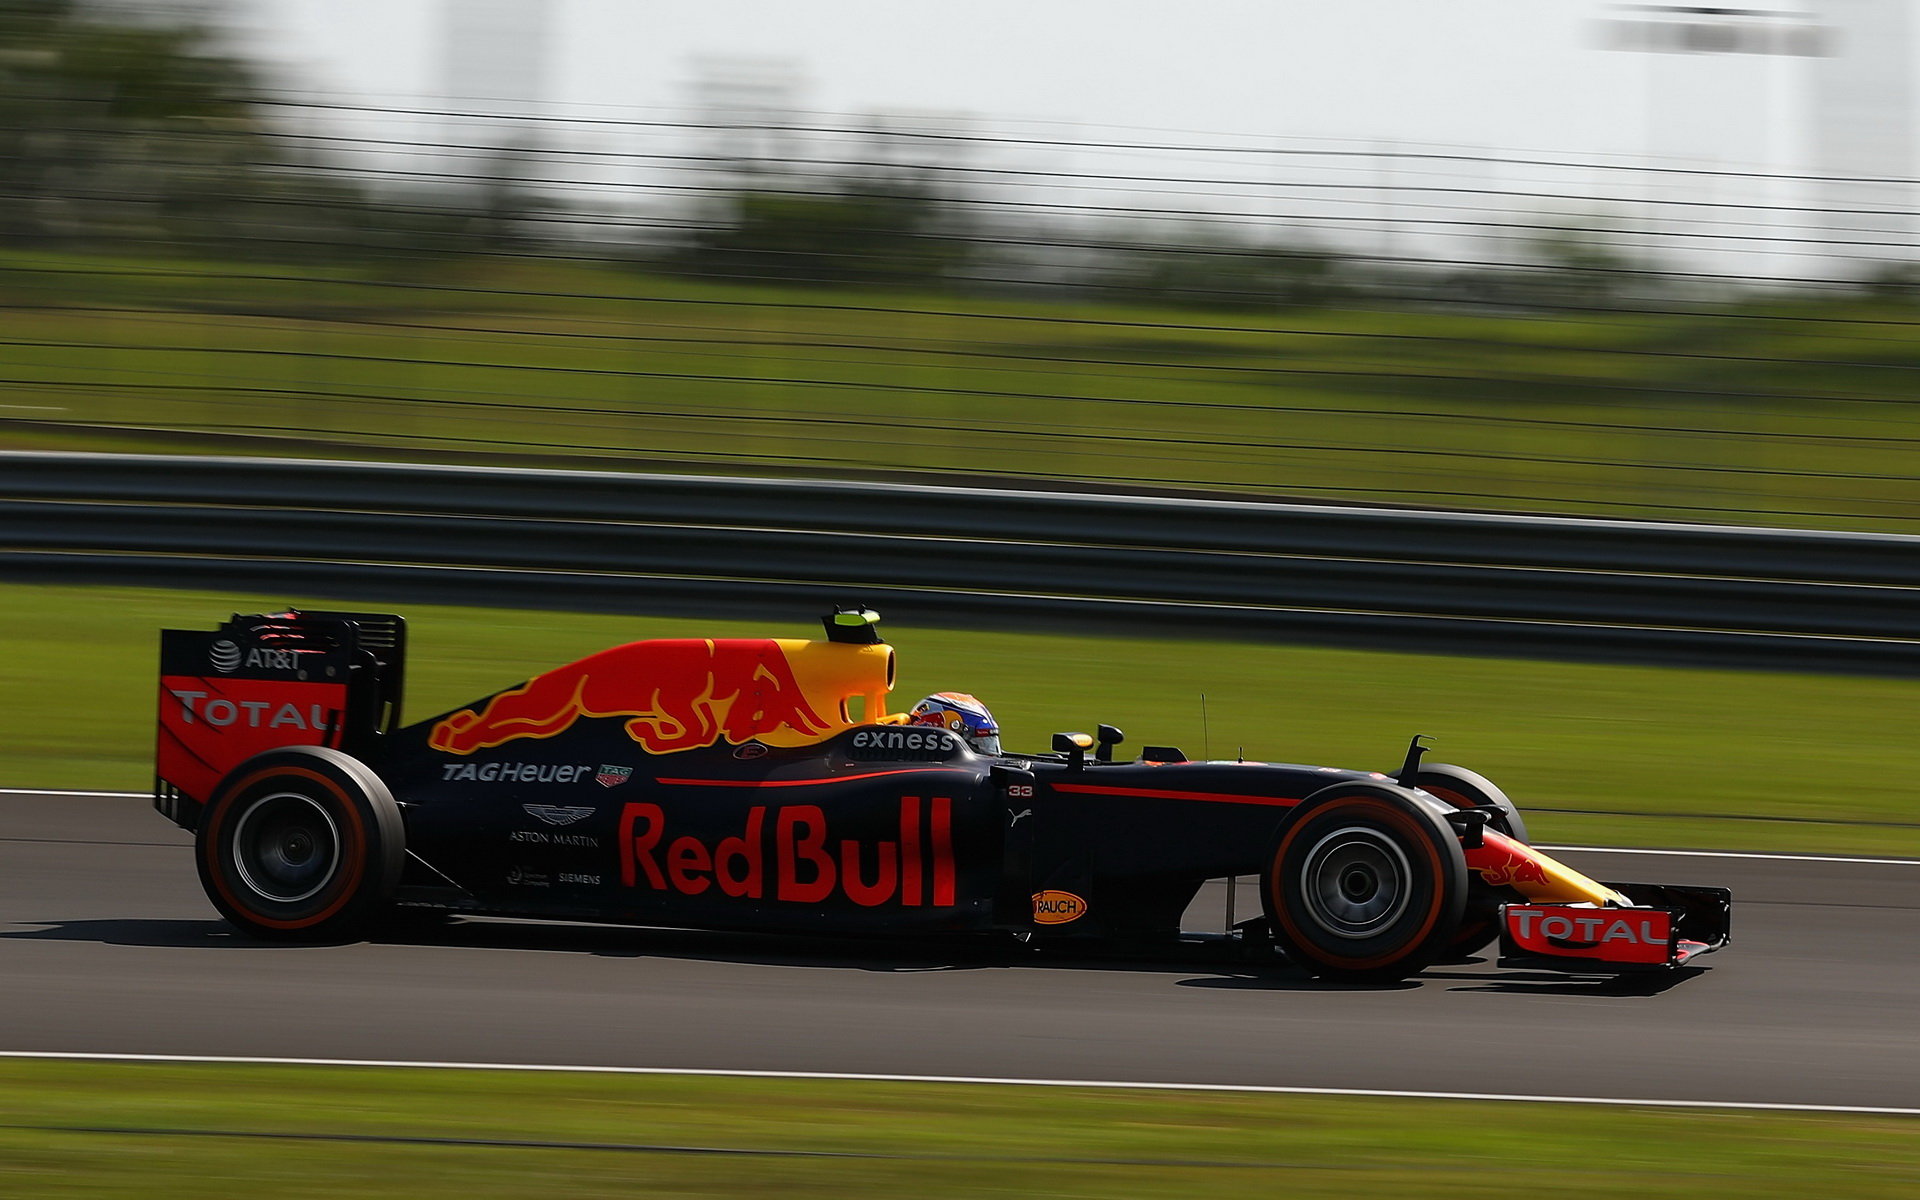 Max Verstappen v závodě v Malajsii